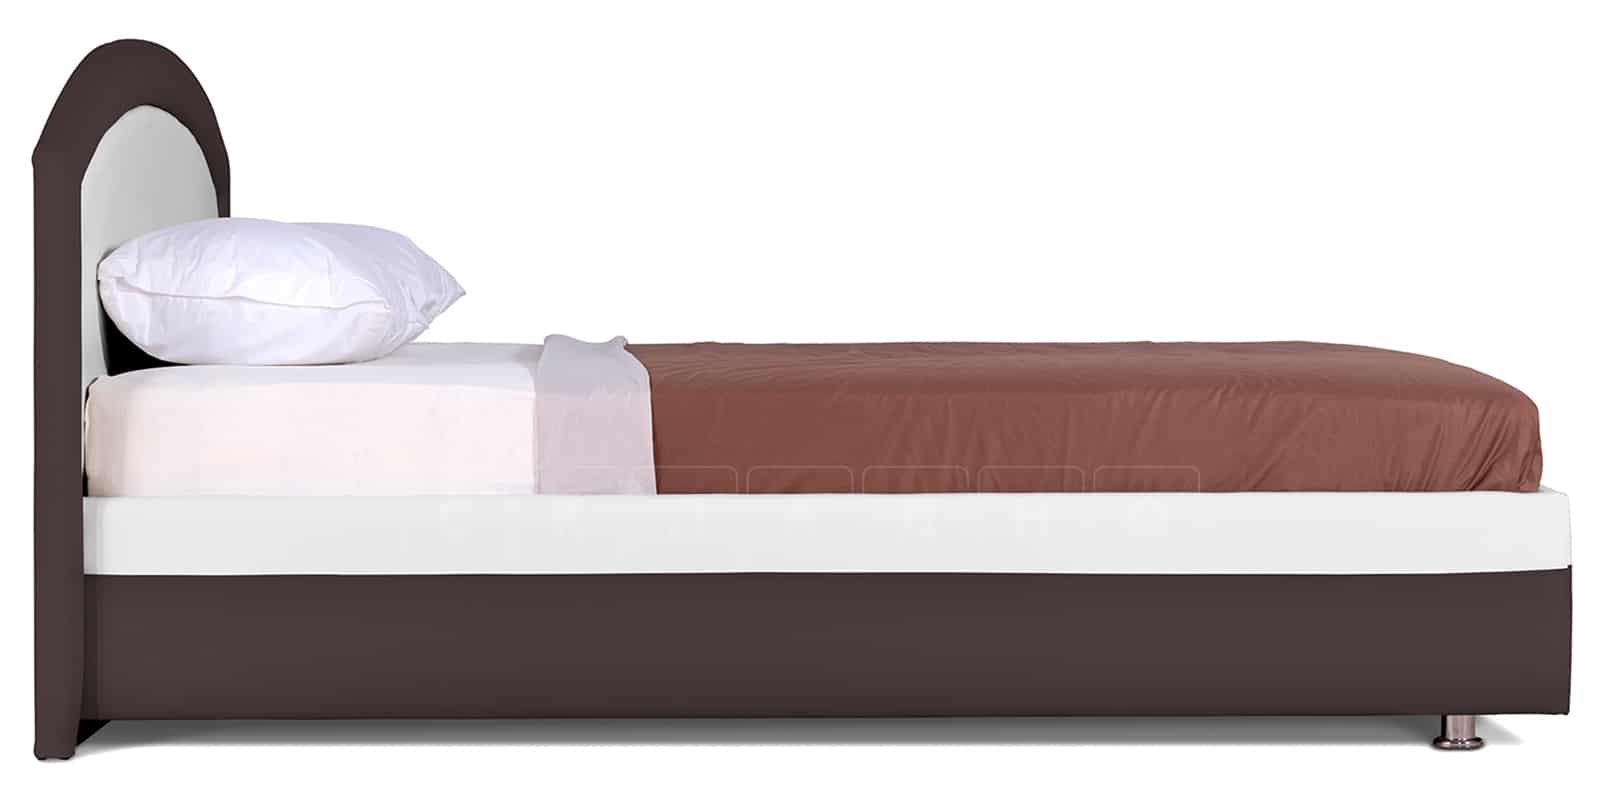 Мягкая кровать Малибу 160см экокожа белый-шоколад вариант 8-2 фото 4 | интернет-магазин Складно